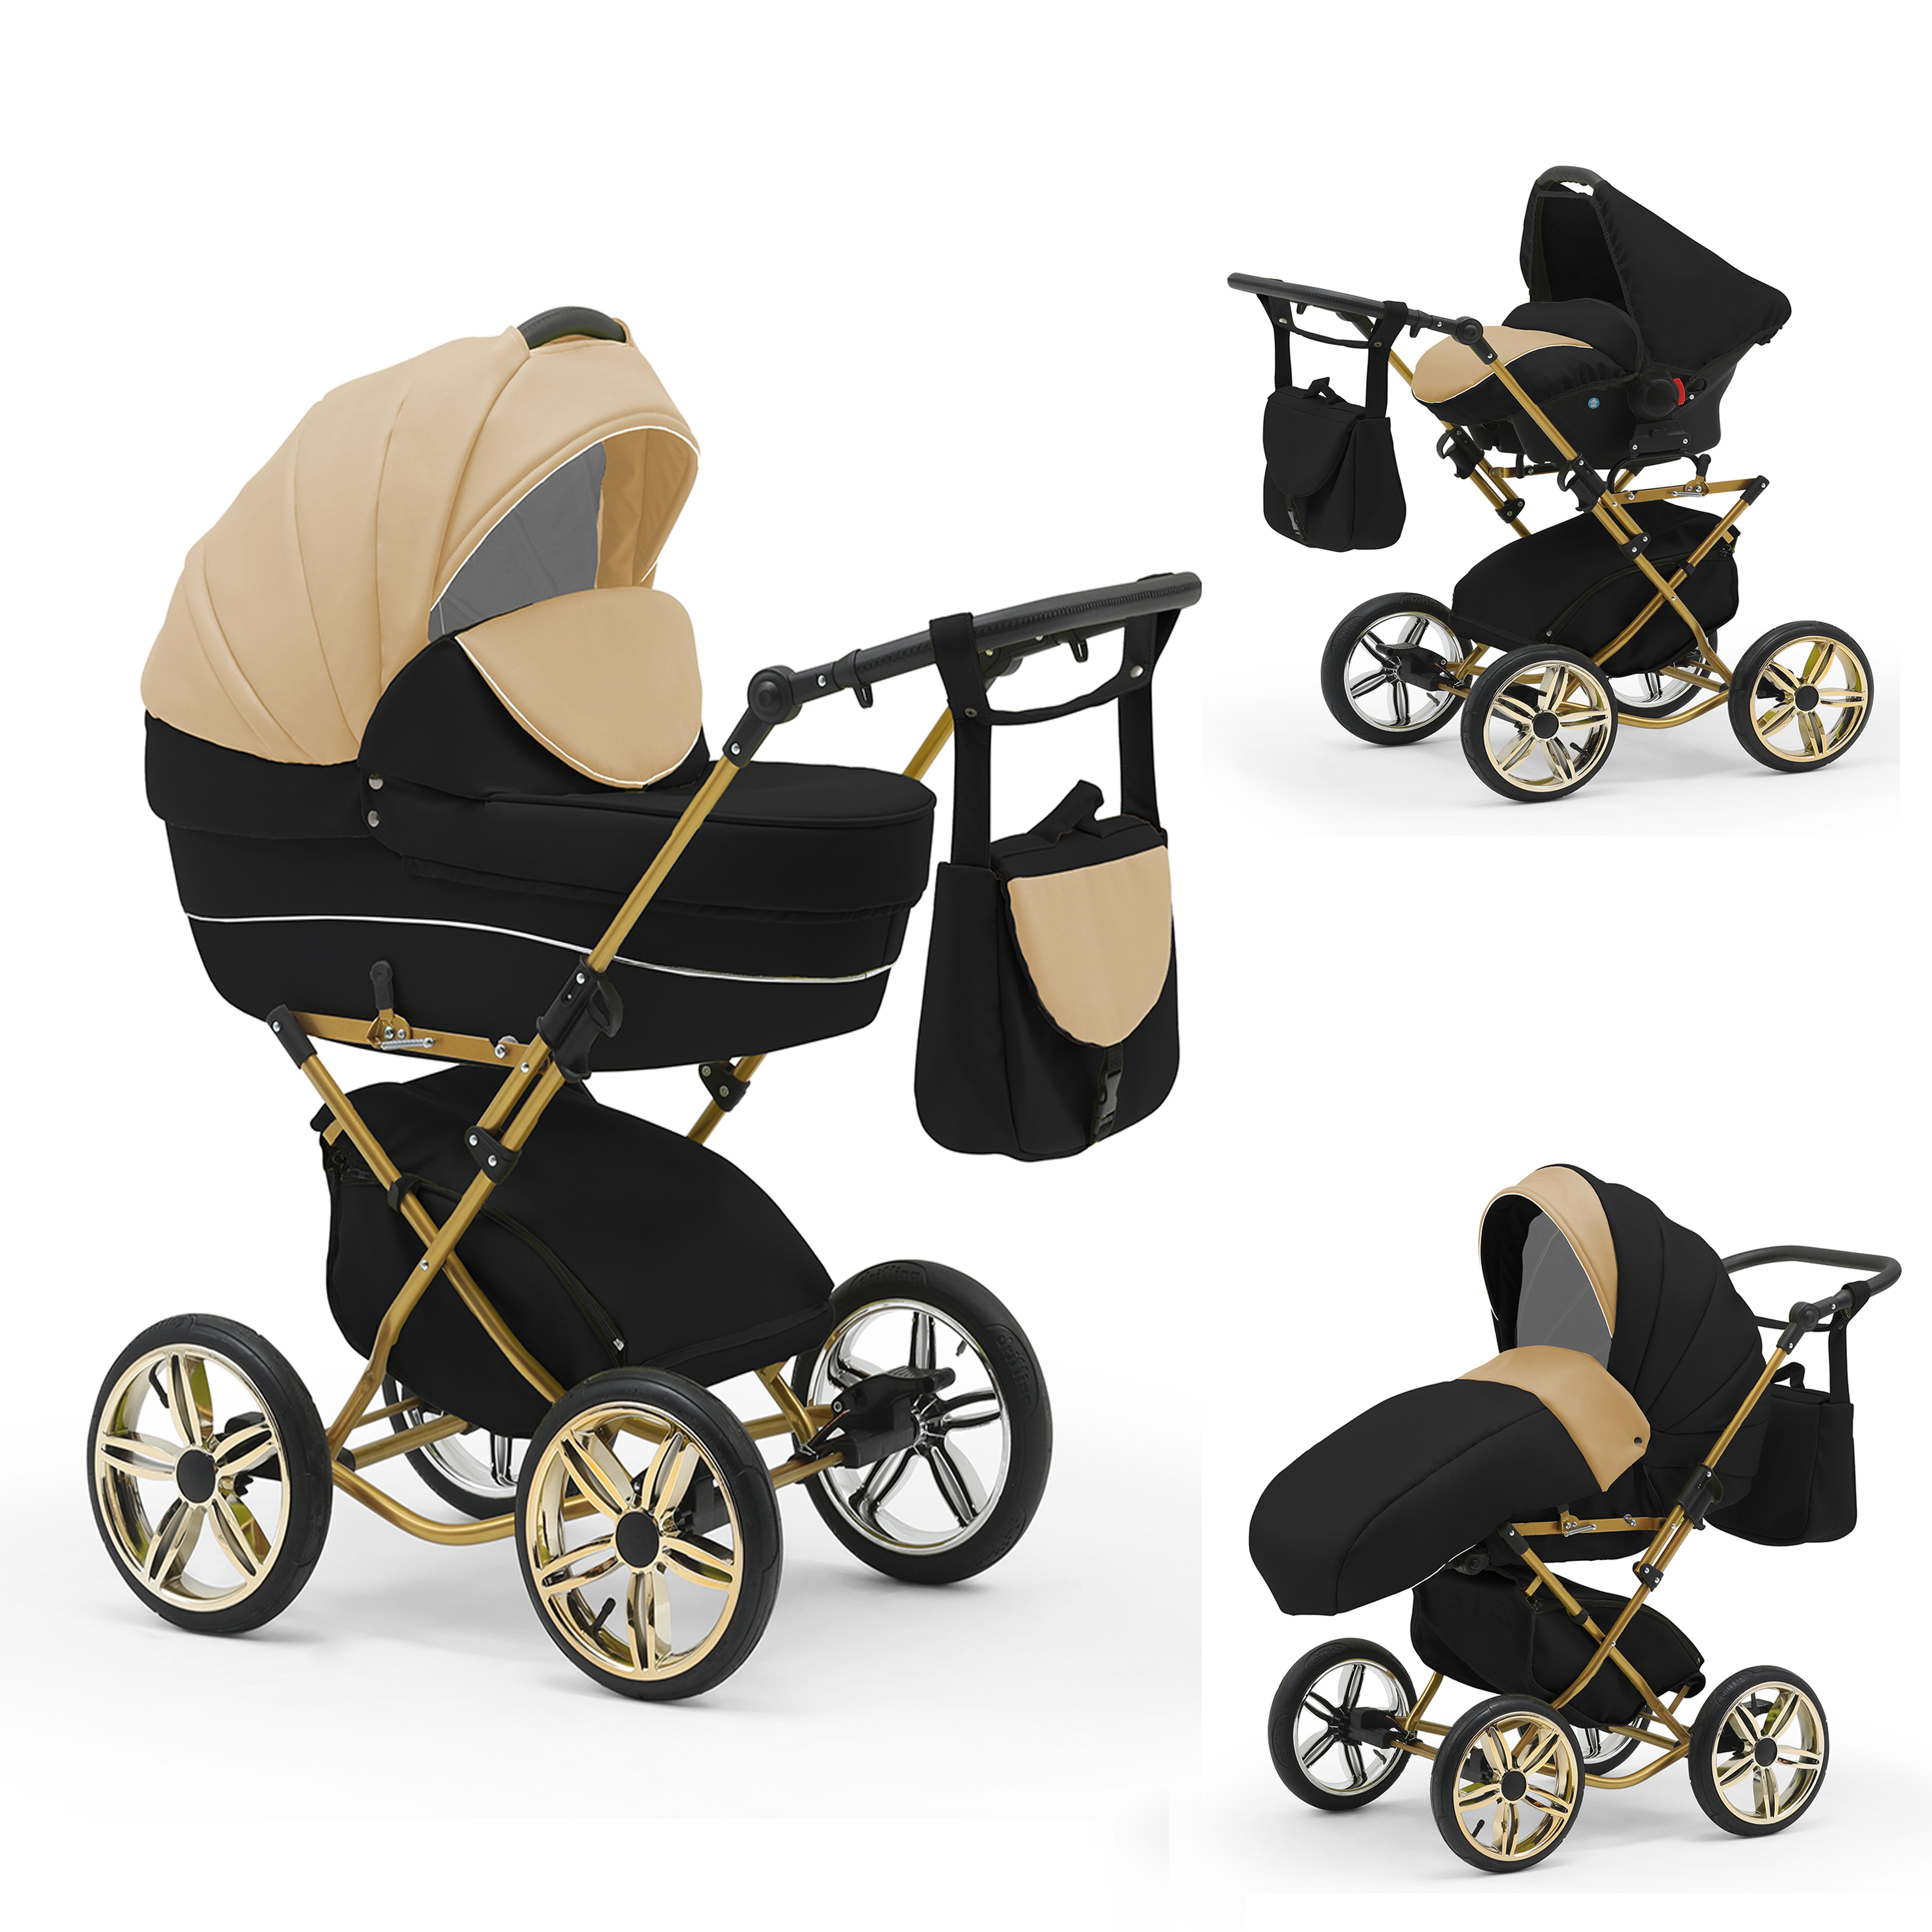 babies-on-wheels Kombi-Kinderwagen Sorento 3 in 1 inkl. Autositz - 13 Teile - in 10 Designs Beige-Schwarz